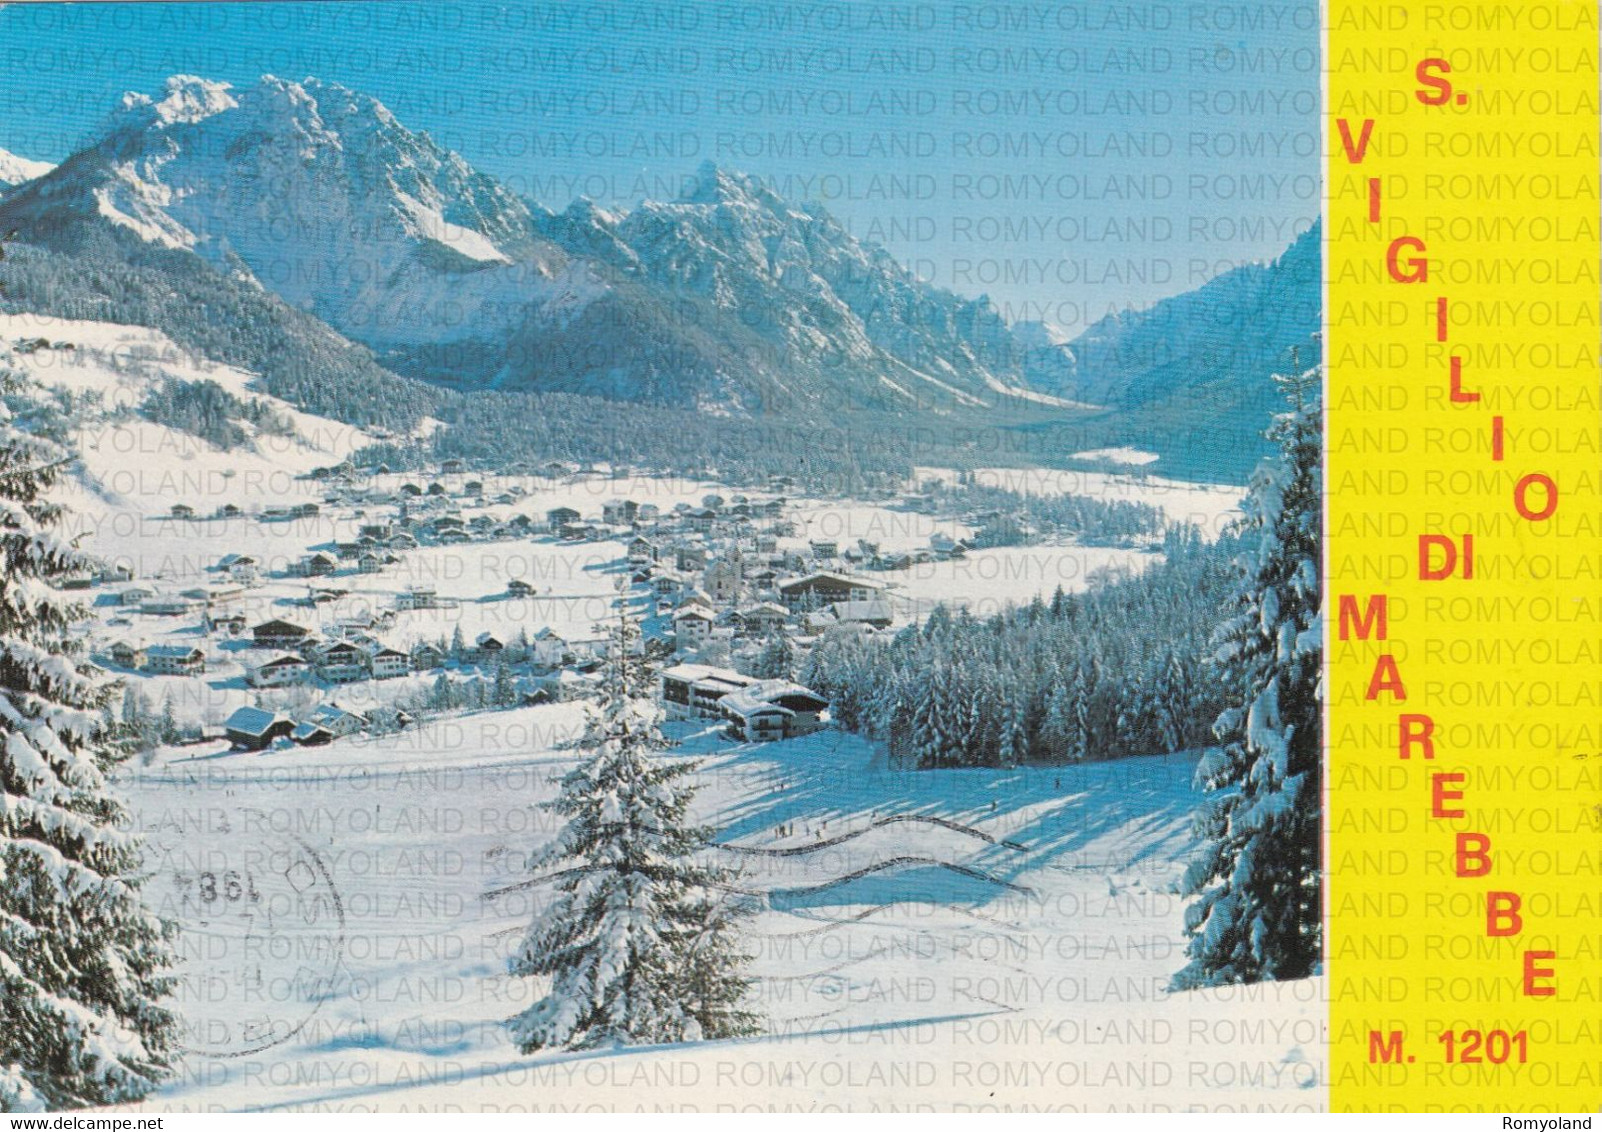 CARTOLINA  S.VIGILIO DI MAREBBE M.1201,BOLZANO,TRENTINO ALTO ADIGE,VERSO LA VAL DI RUDO,MONTAGNA,VACANZA,VIAGGIATA 1984 - Bolzano (Bozen)